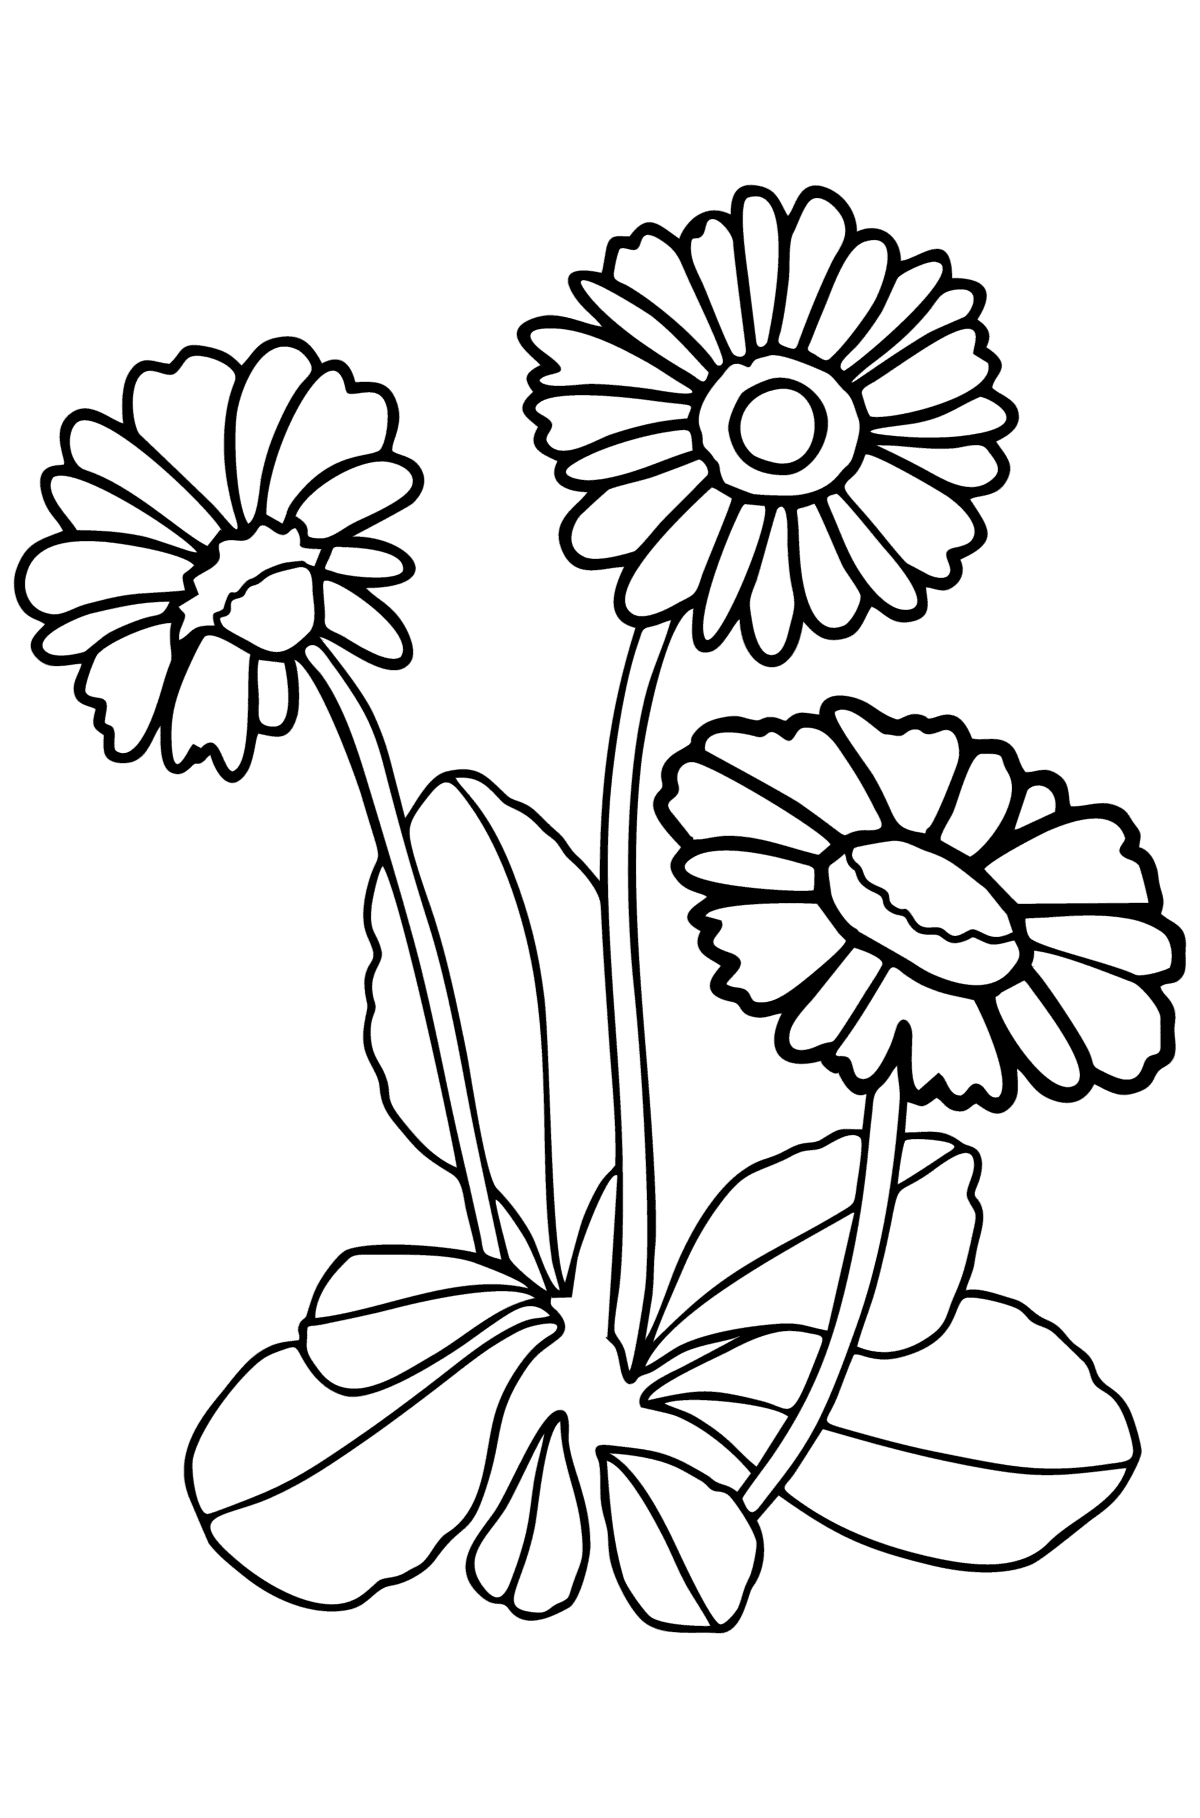 Tegning til farvning Daisy - Tegninger til farvelægning for børn